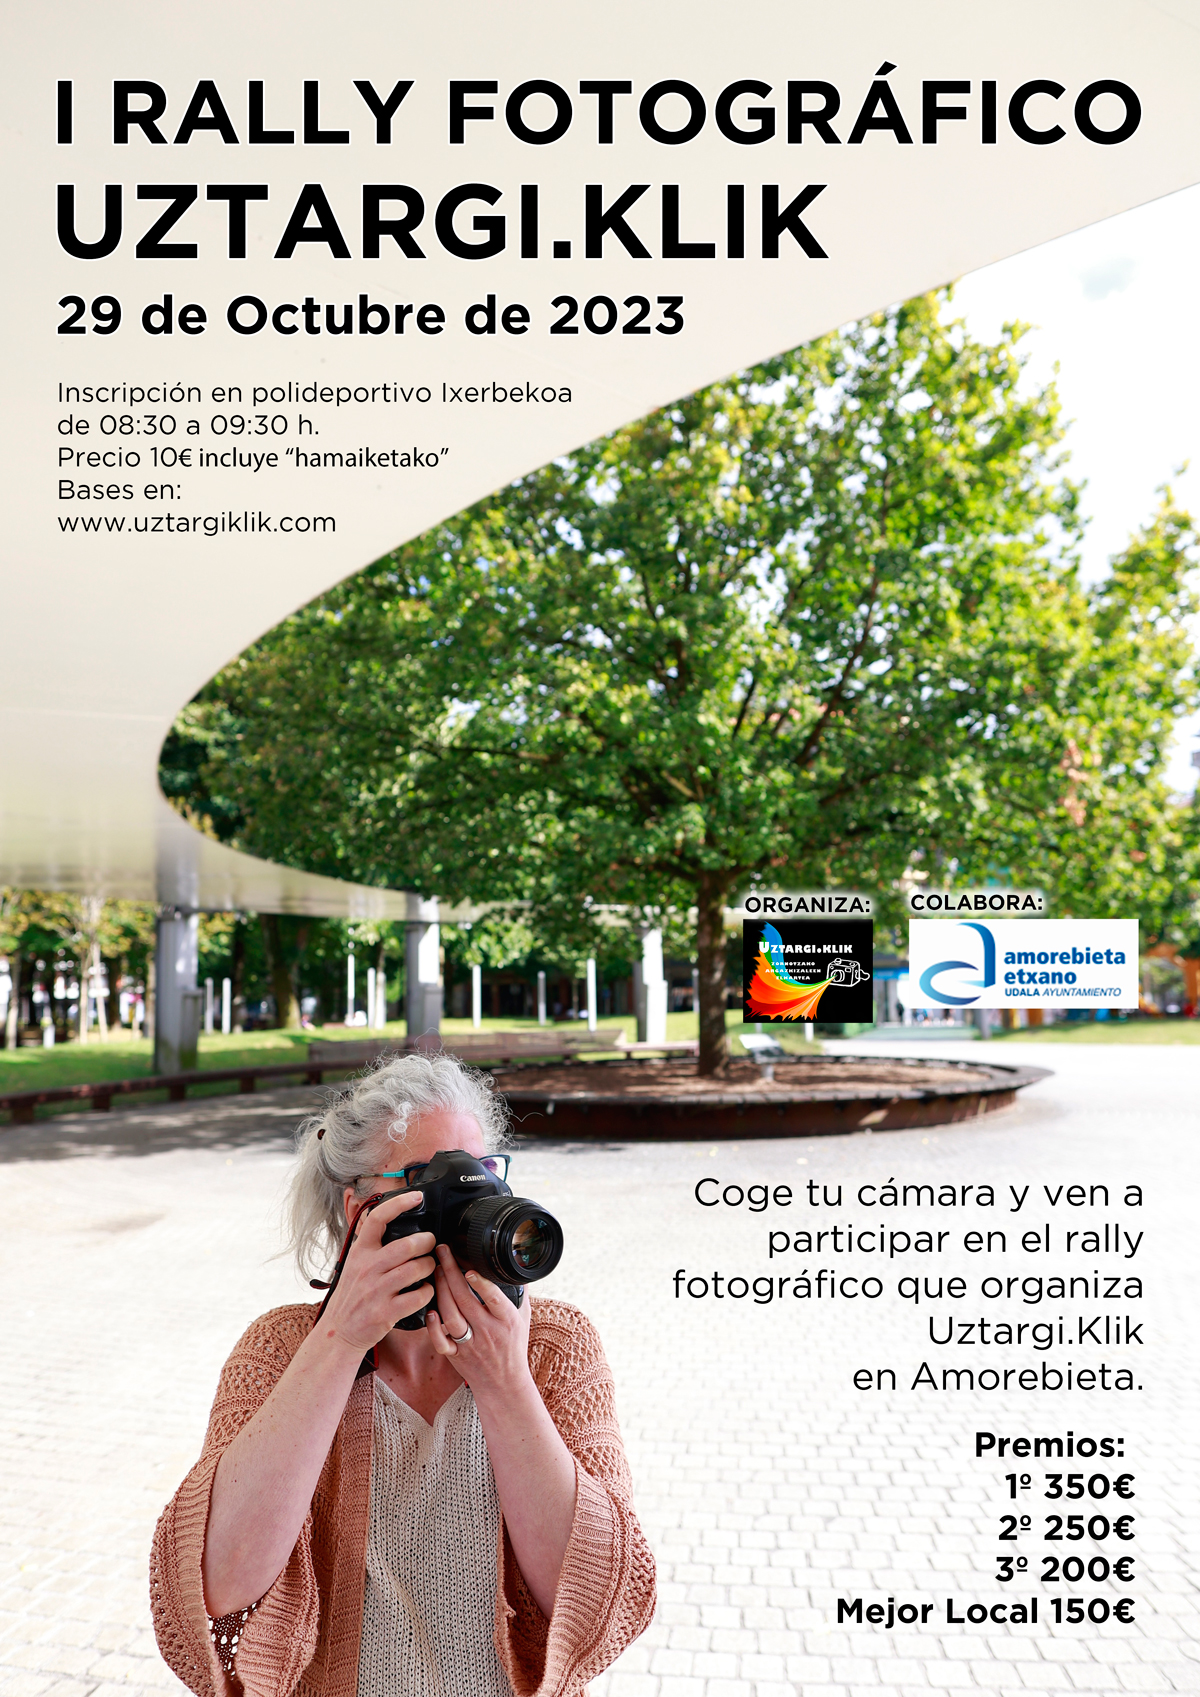 Ver a participar en el primer rally fotográfico de Amorebieta en 2023 que organiza la asociación fotográfica Uztargi.Klik